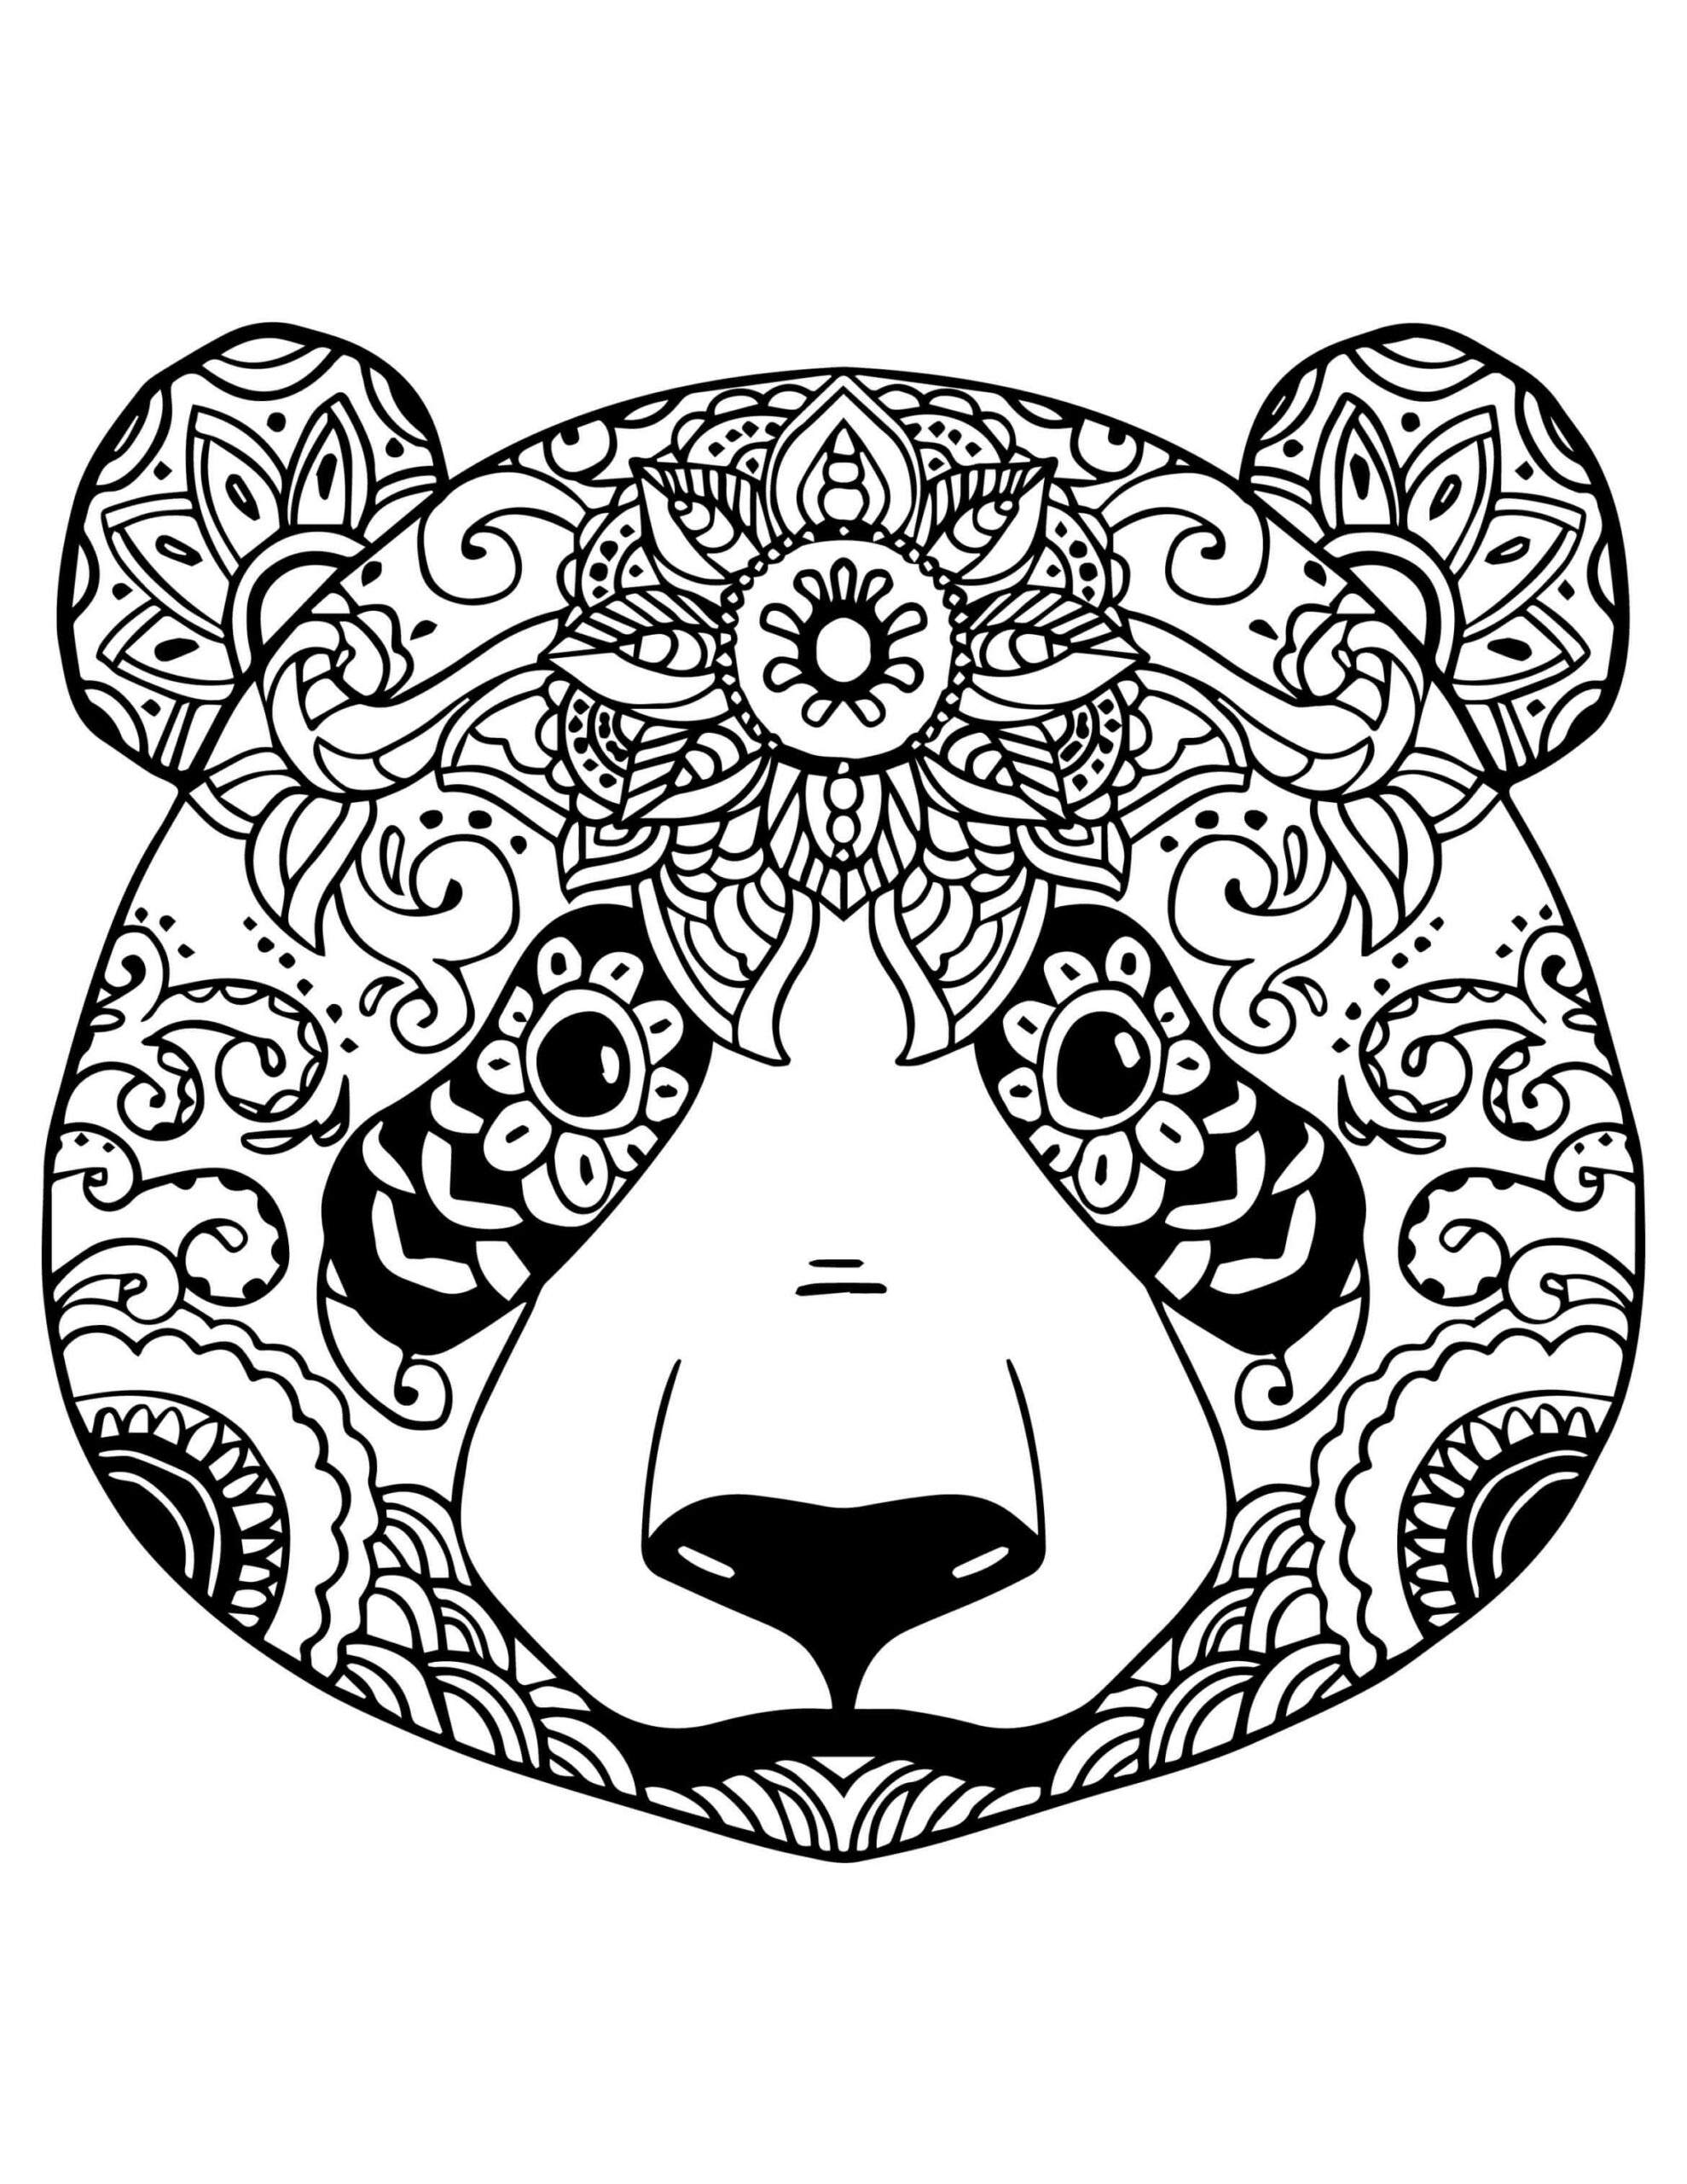 Mandala Panda Coloring Page - Sheet 5 Mandalas